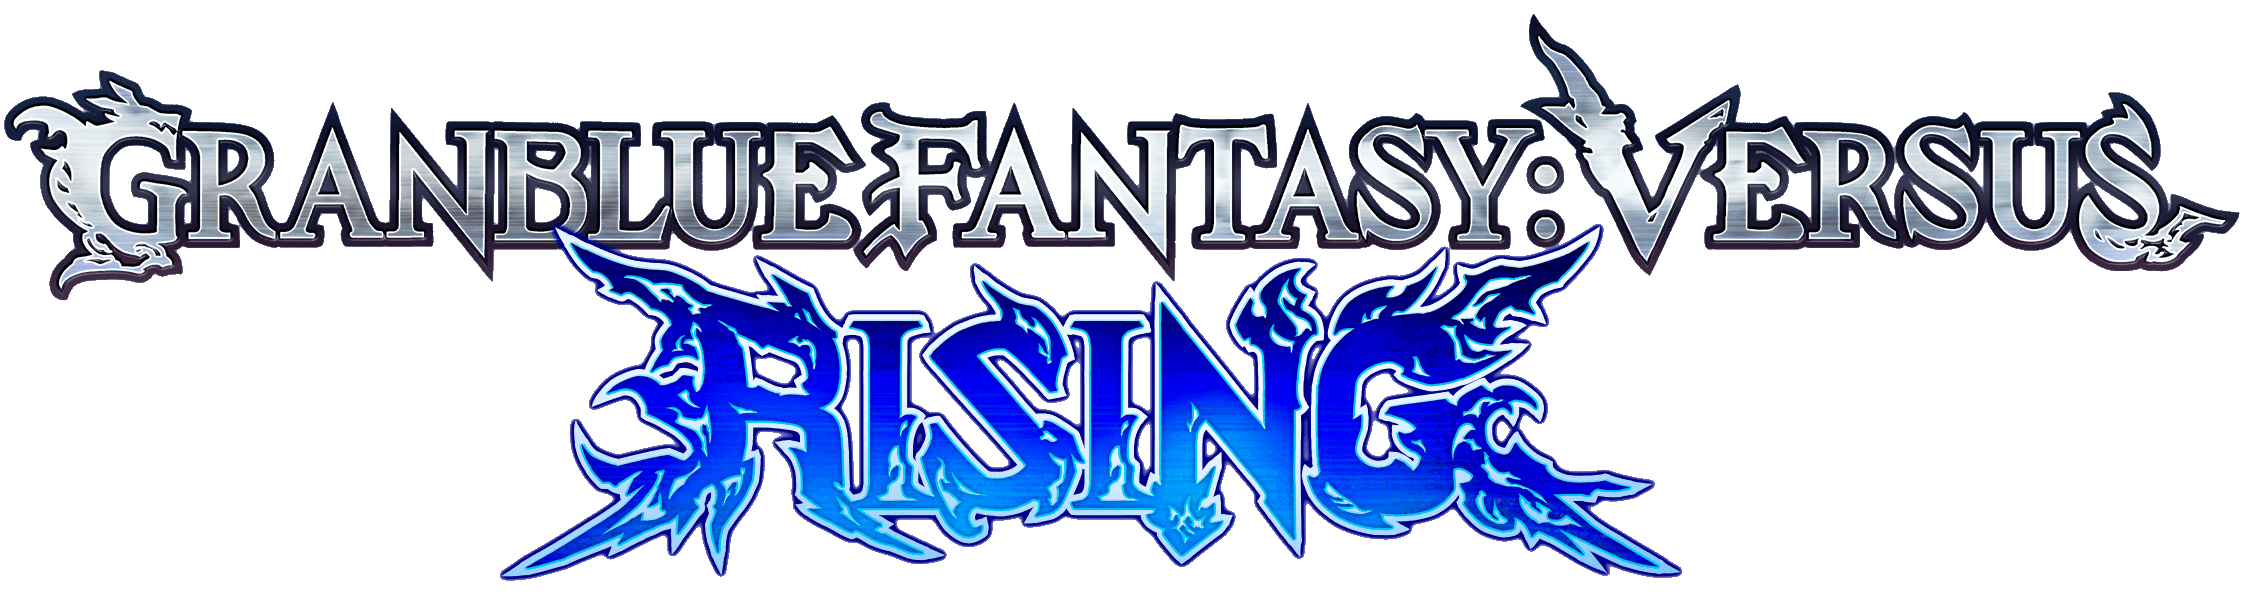 Granblue Fantasy Versus: Rising logo